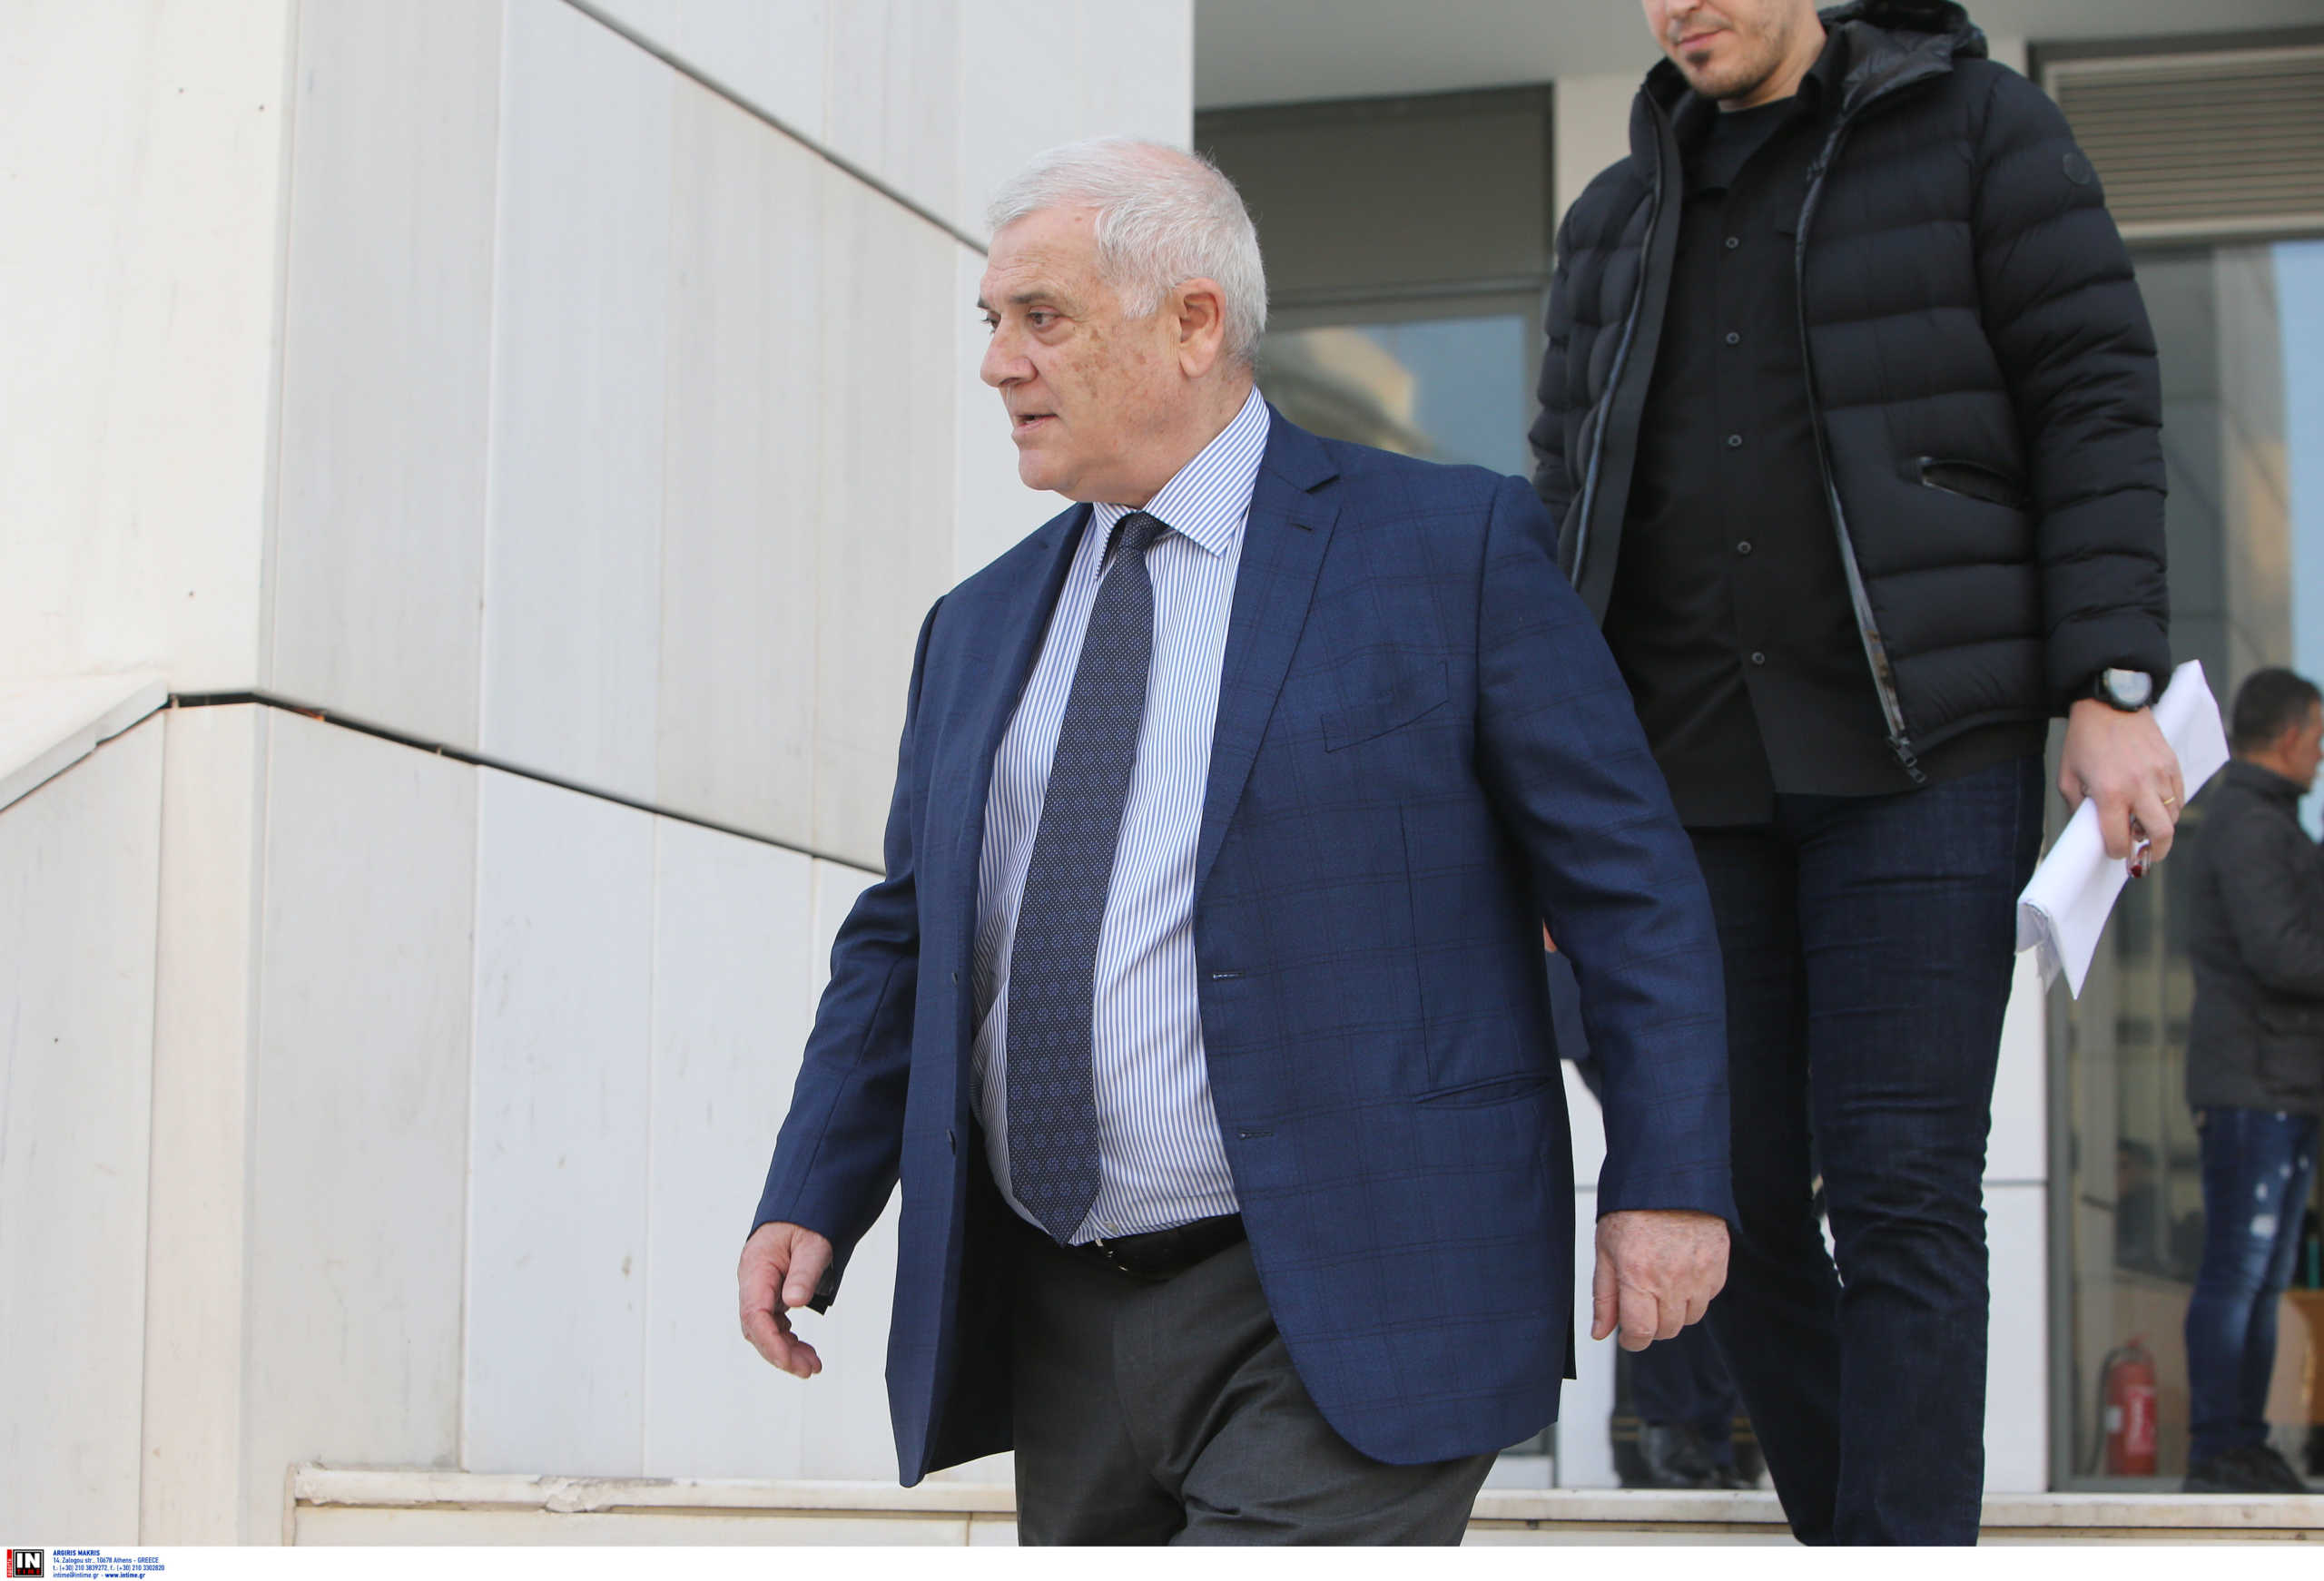 Μελισσανίδης: “Η ΑΕΚ είναι πλέον ισχυρή και ακολουθεί το δικό της ξεχωριστό δρόμο”